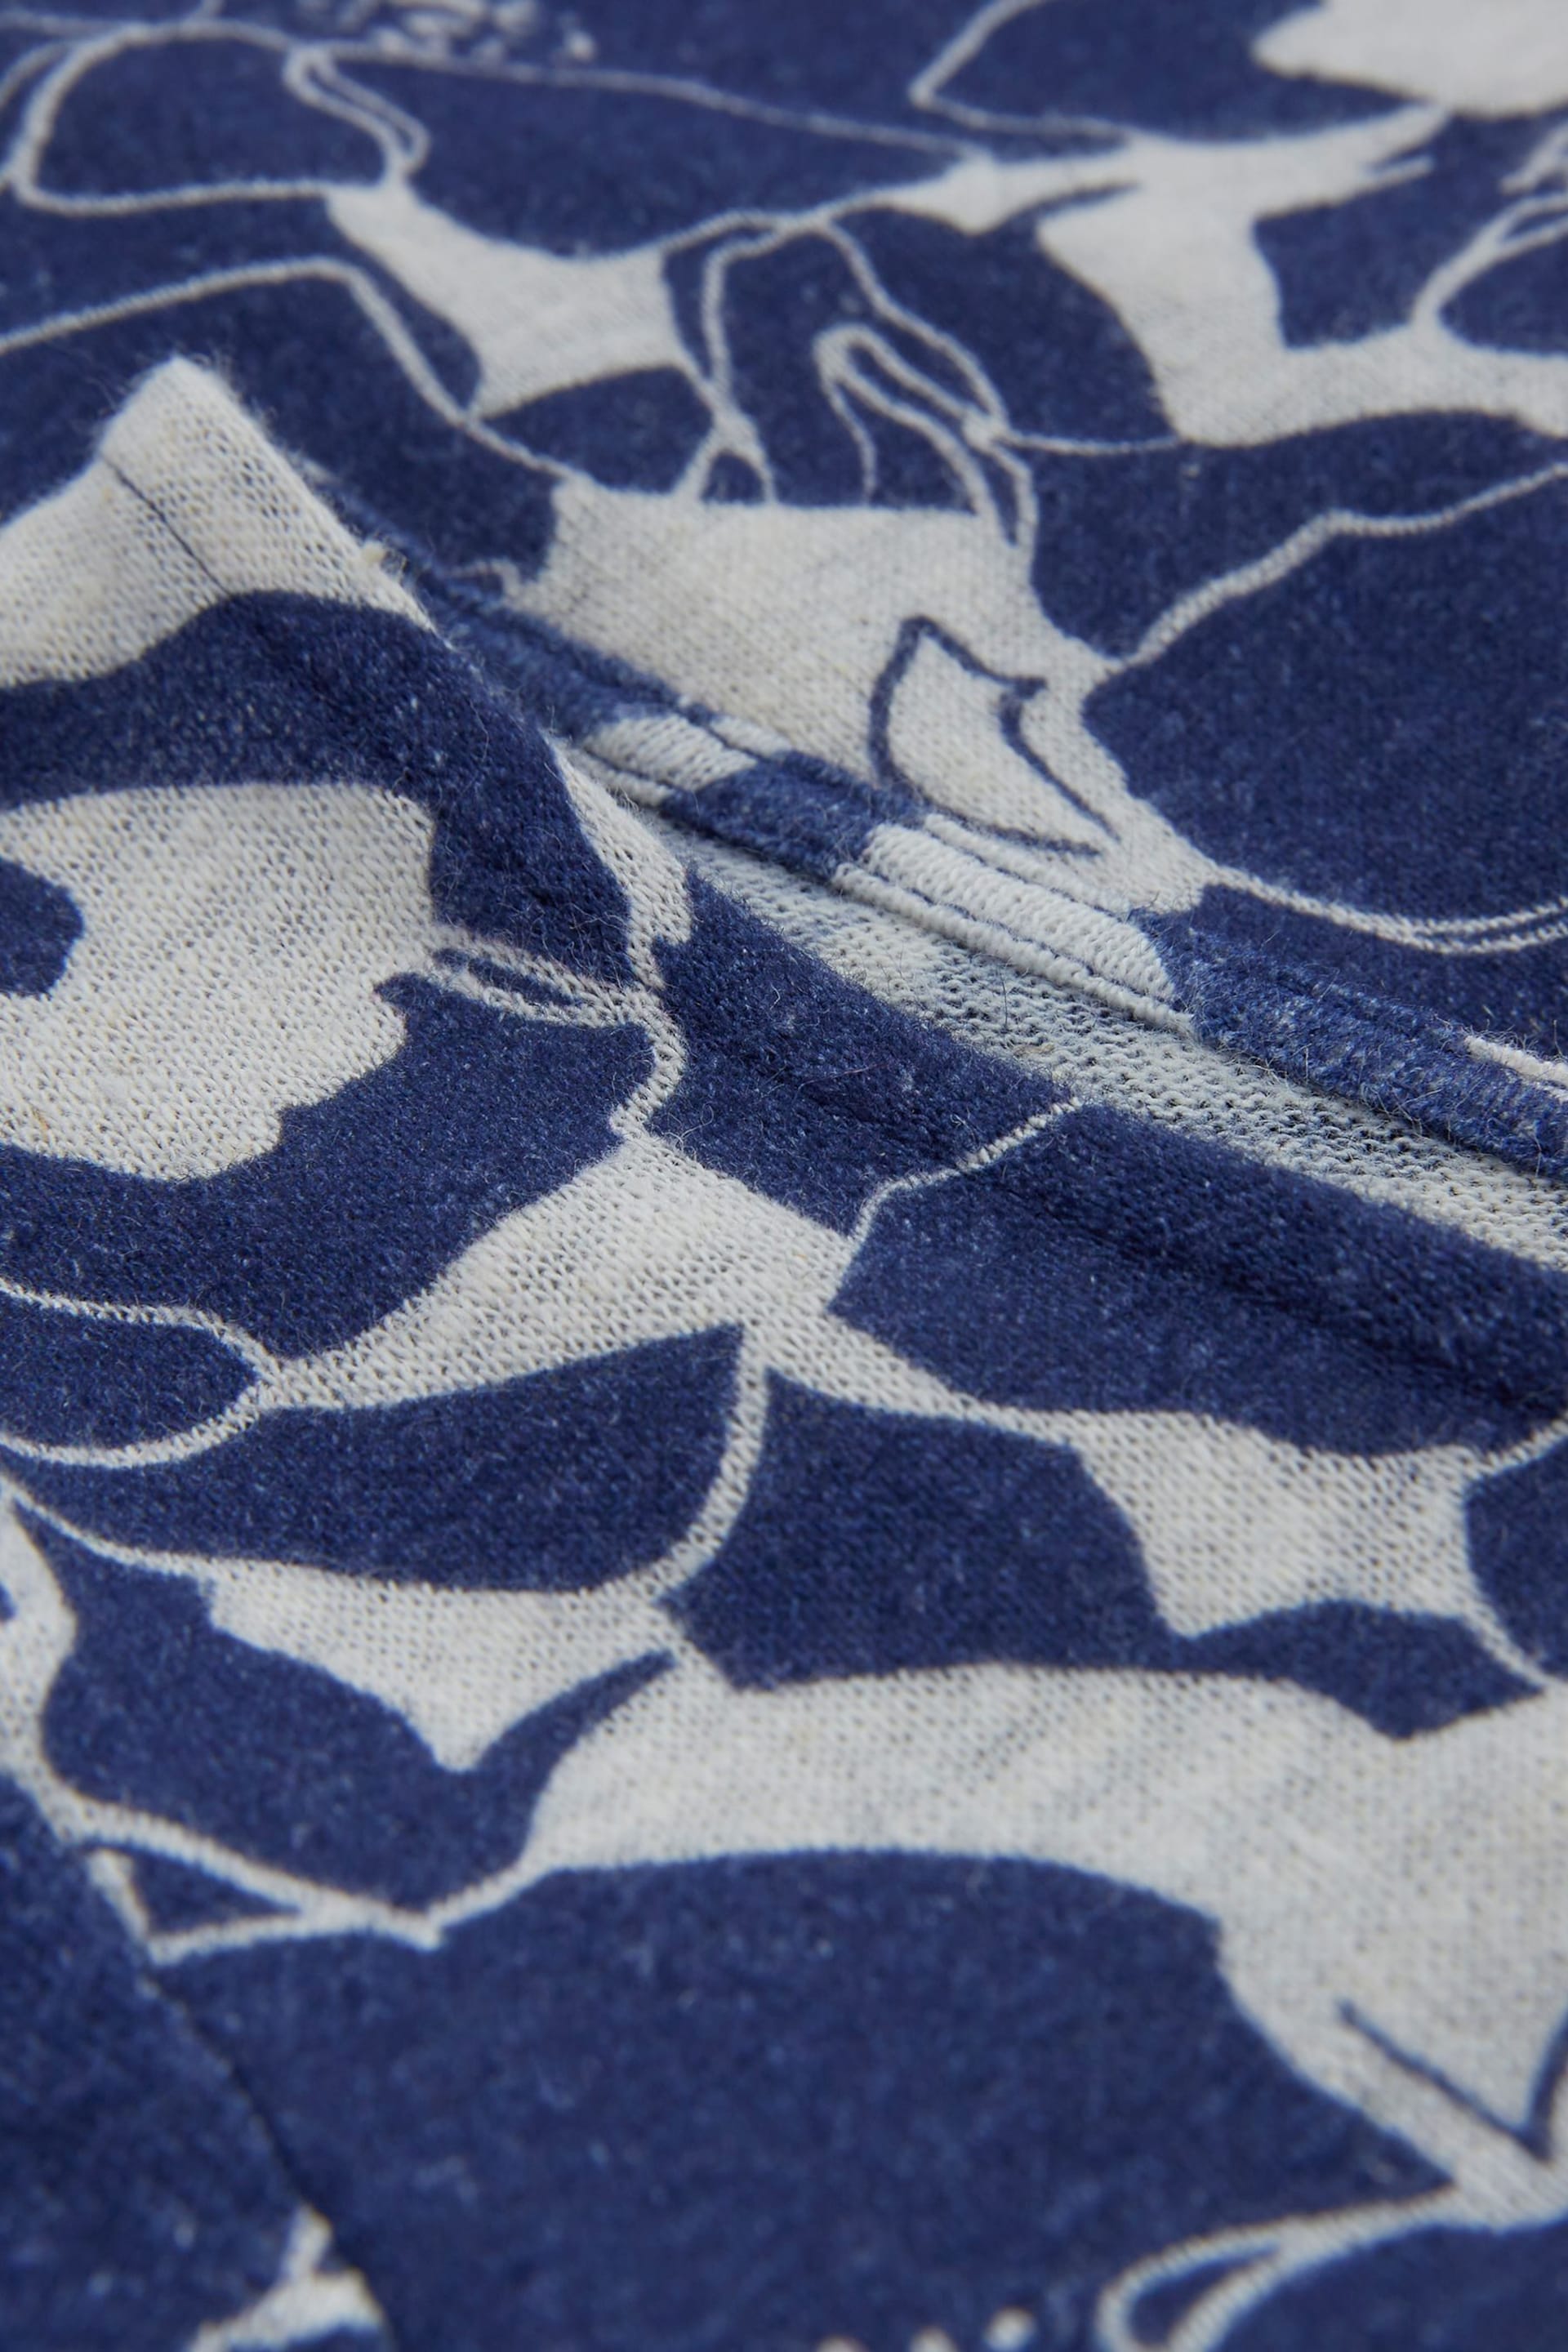 Celtic & Co. Blue Linen / Cotton Scoop Neck T-Shirt - Image 5 of 5